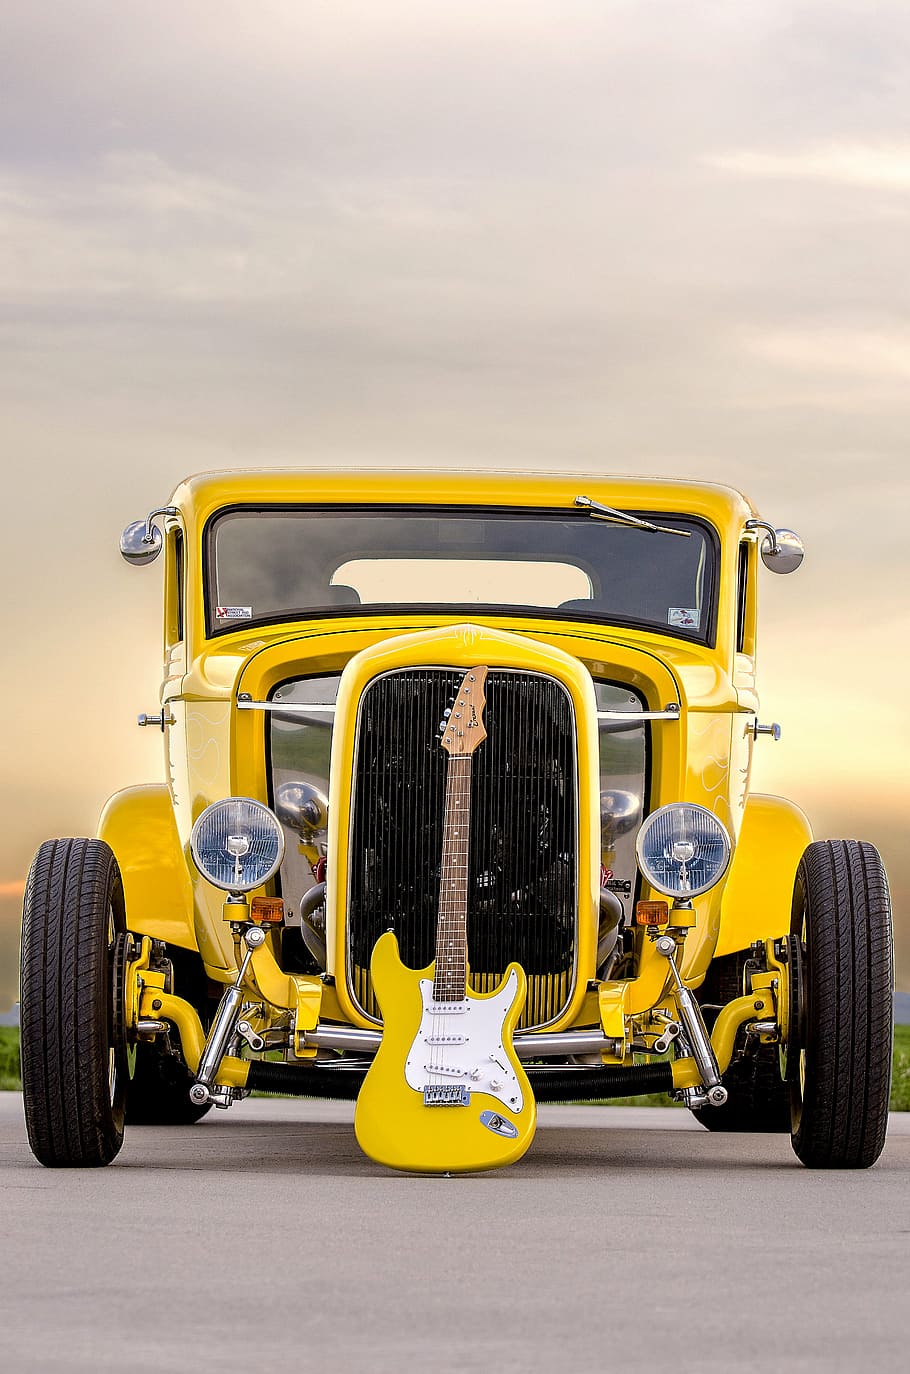 kuning, hotrod, listrik, gitar, depan, mobil klasik, gitar listrik, mobil otot, mobil tua, kenari kuning